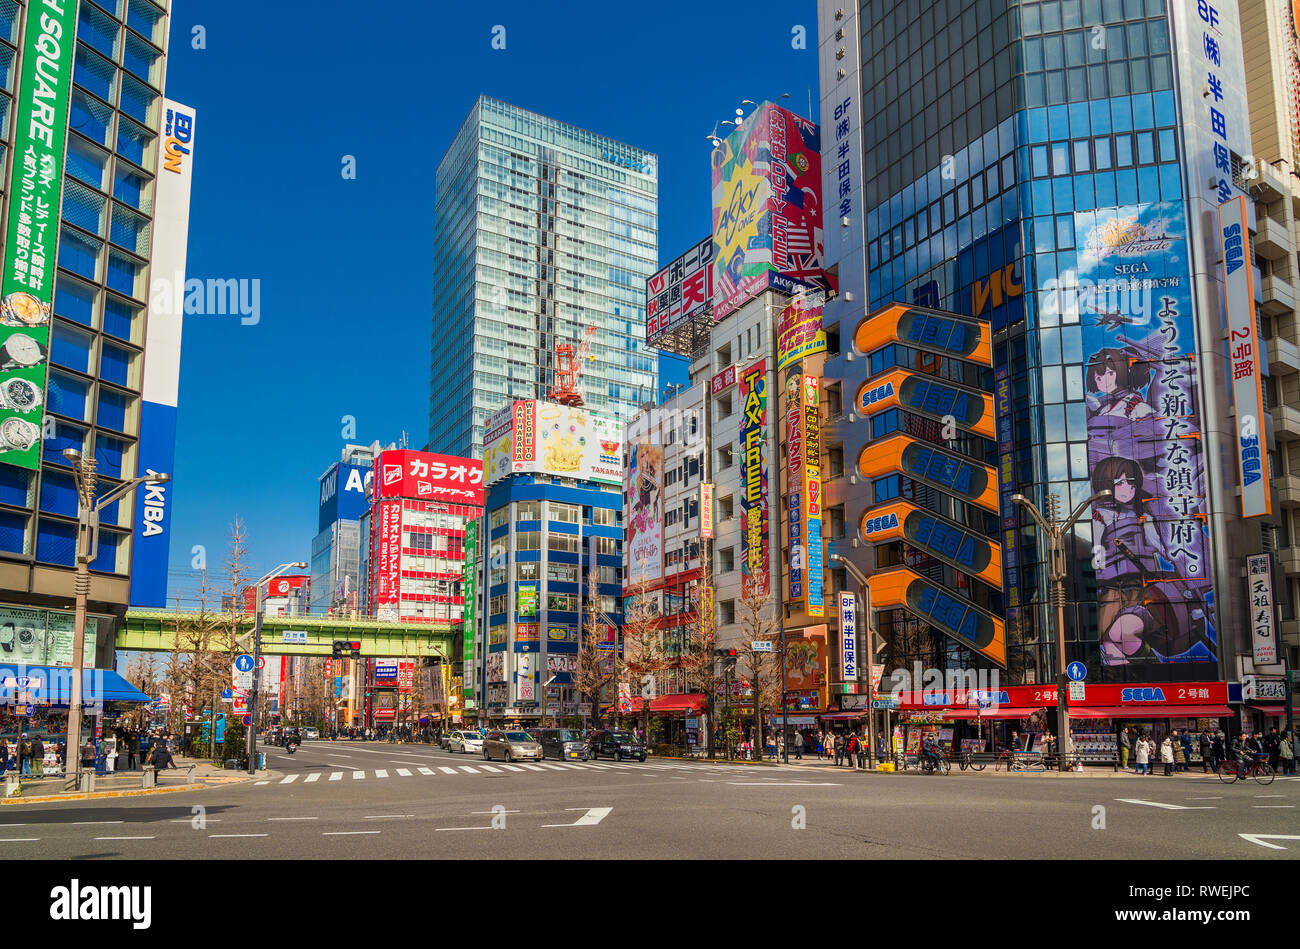 Akihabara Electric Town in Tokio, weiß für Geschäfte für Anime, Manga, Videospiele und andere Produkte der Japanischen otaku Kultur Stockfoto